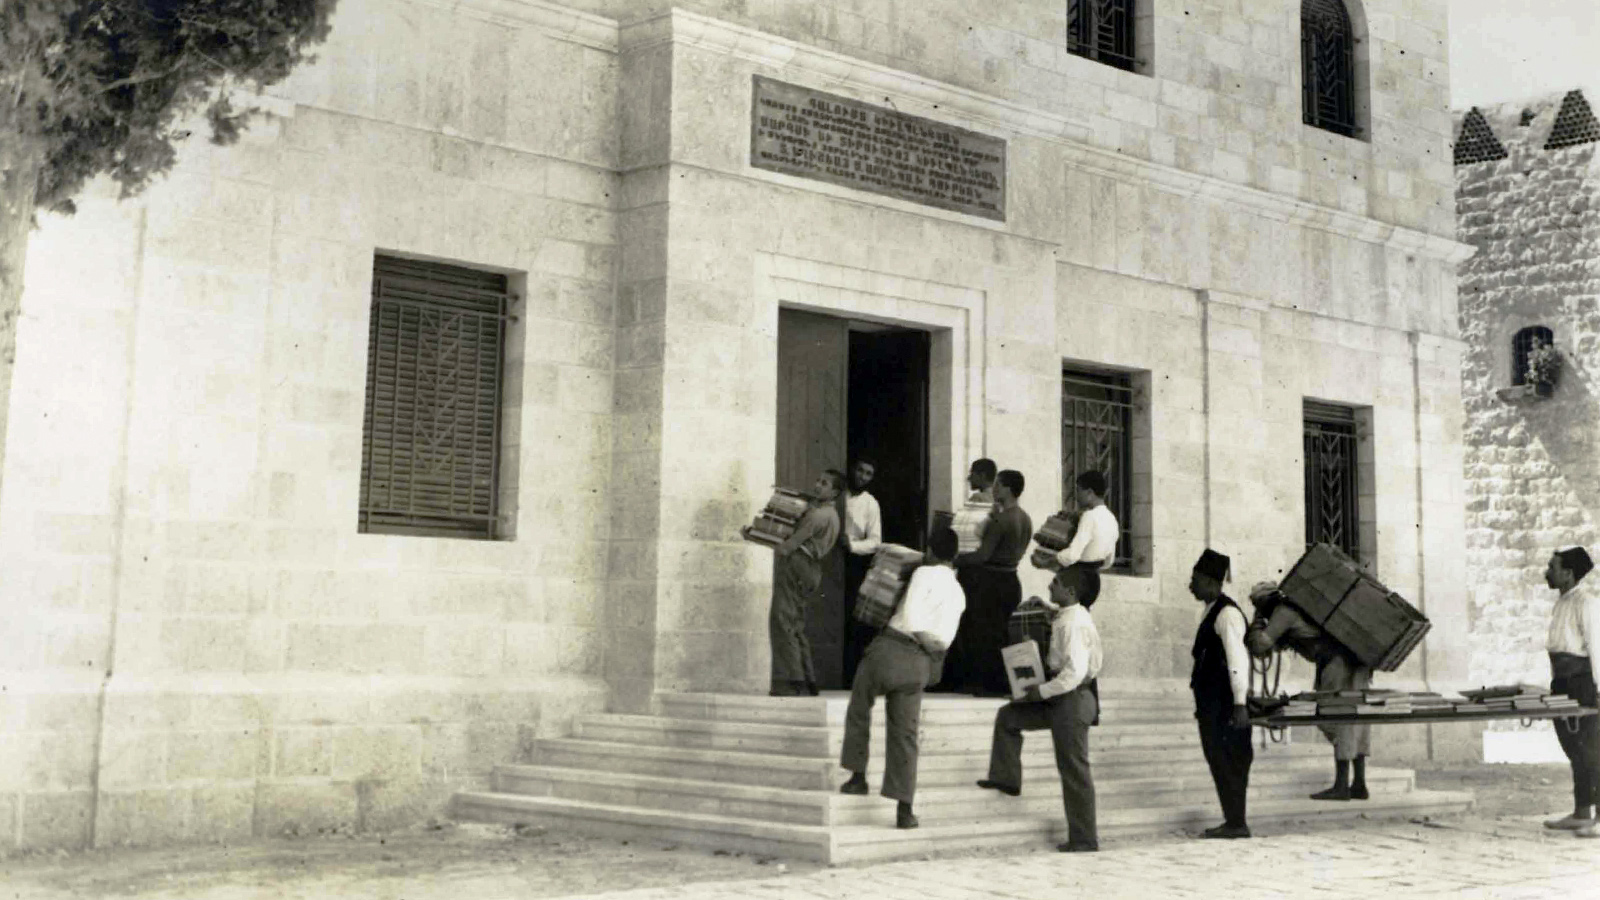 Transporte de livros para o interior da Biblioteca Gulbenkian. Aram Hashadoor, Jerusalém, sem data. Arquivos Gulbenkian F04-02692.